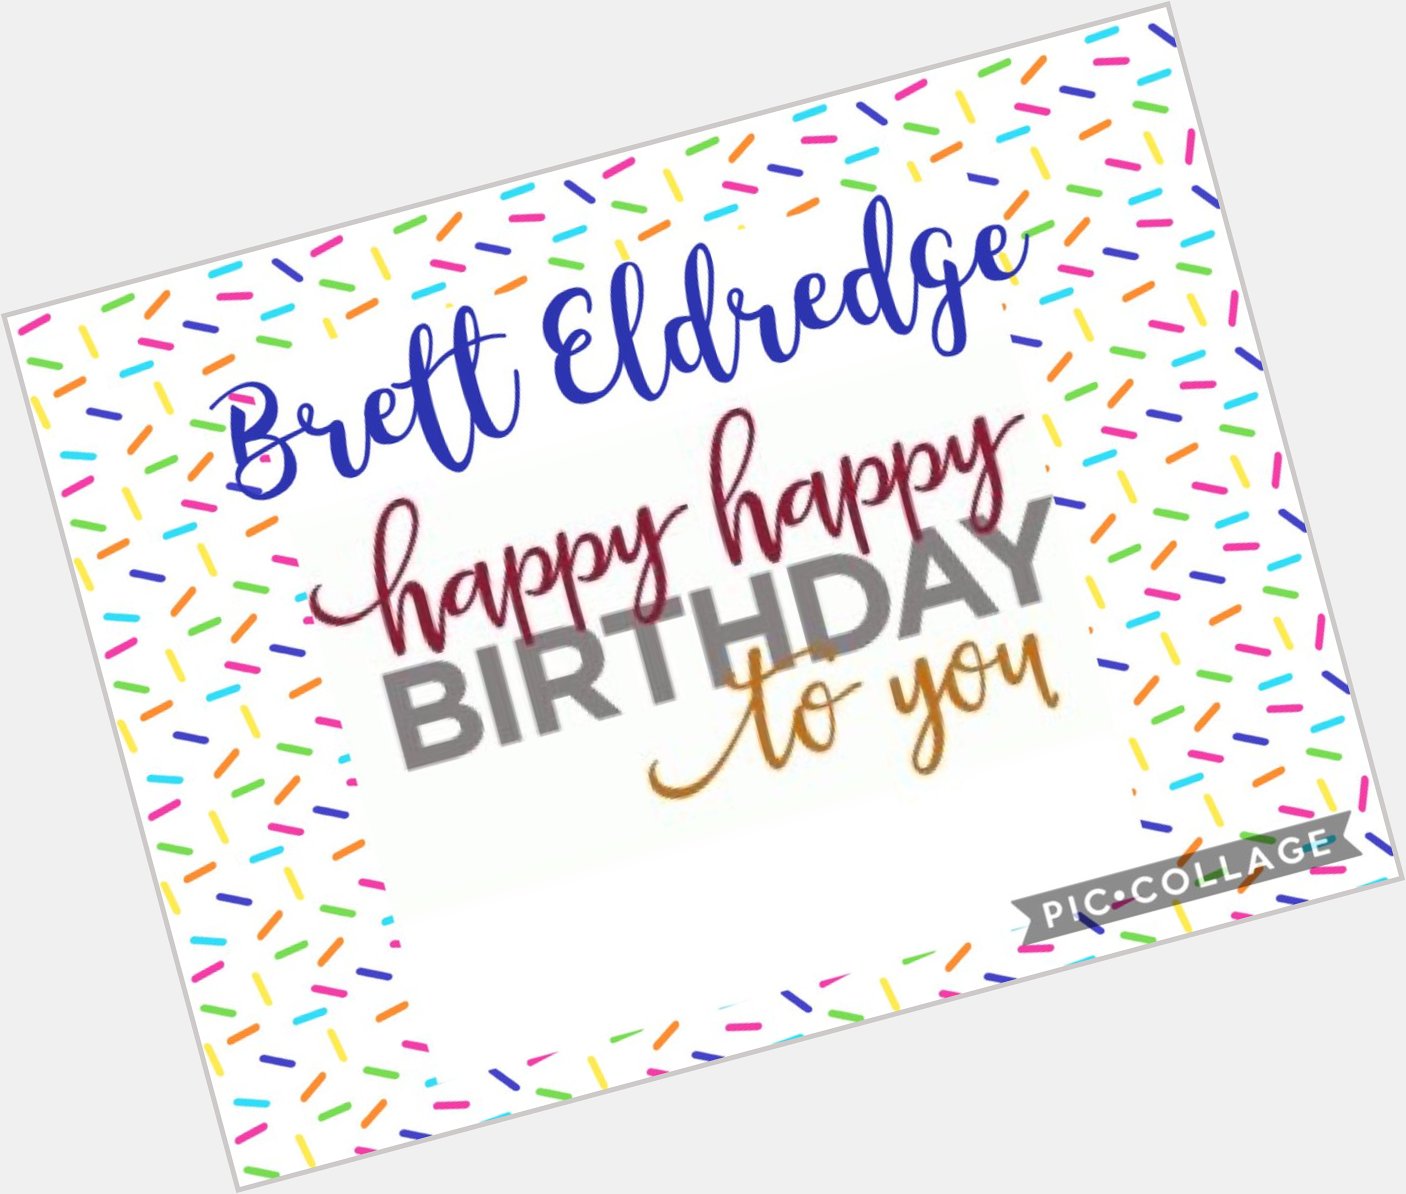 Happy birthday   Brett Eldredge.  